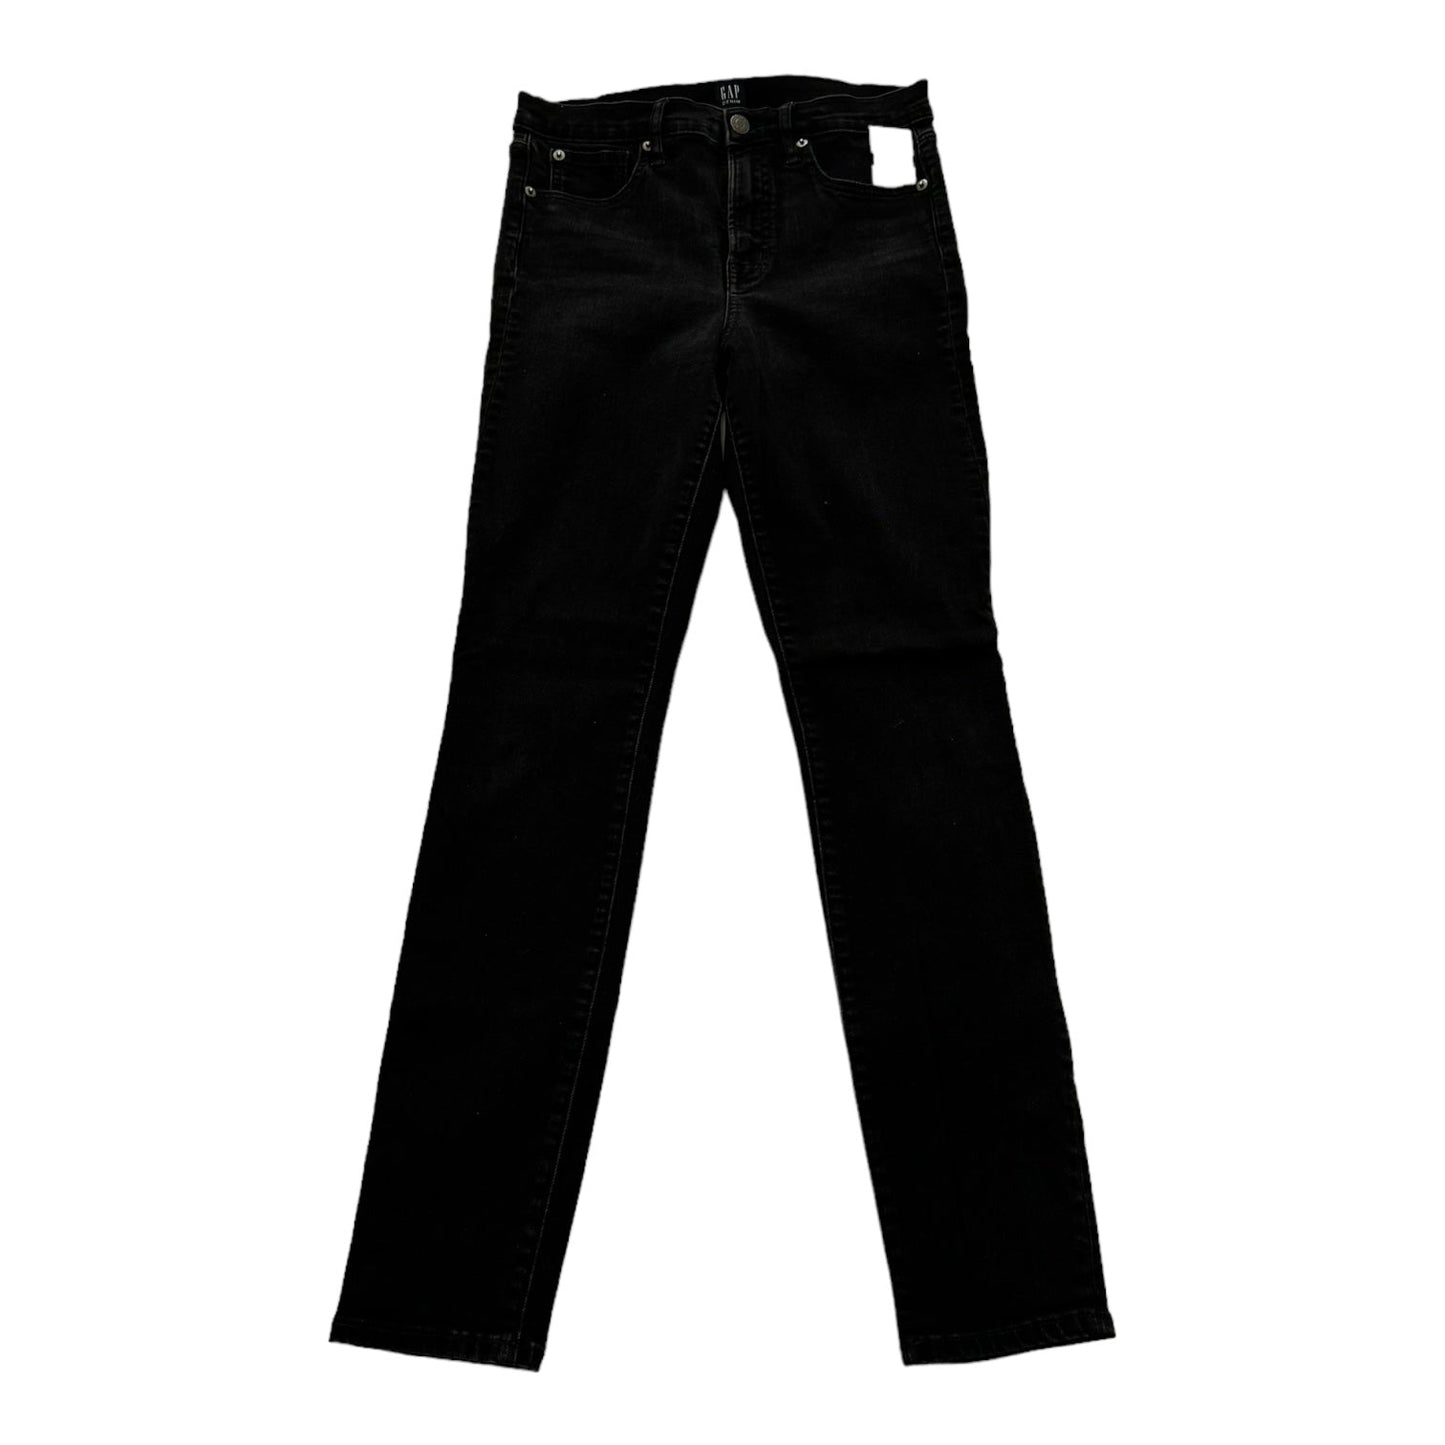 Black Denim Jeans Skinny Gap, Size 4